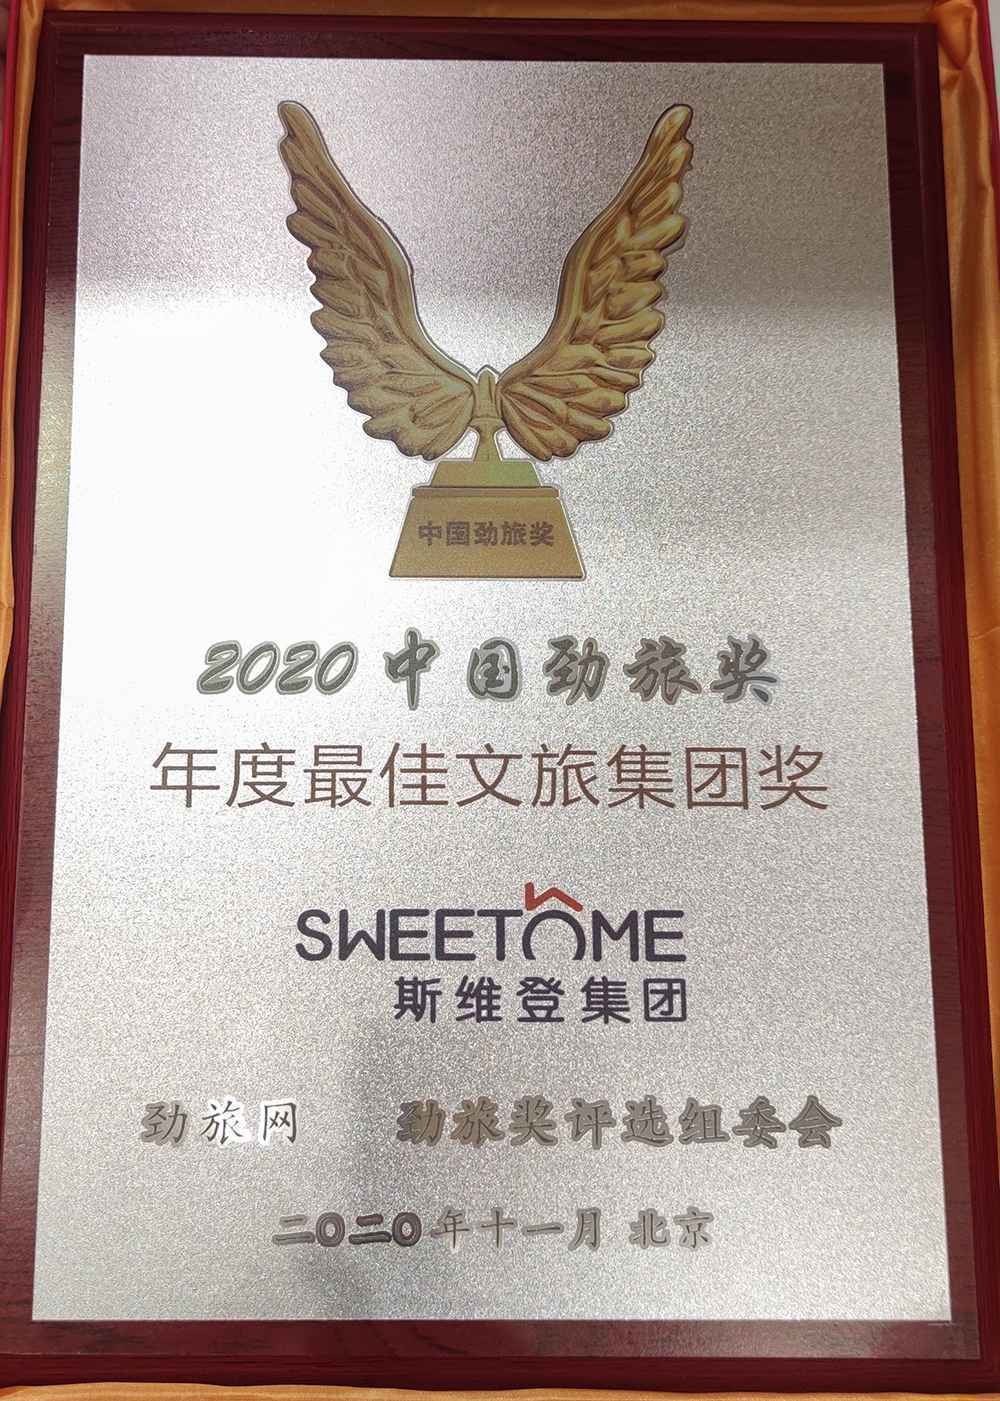 斯维登集团荣获“2020中国劲旅奖年度最佳文旅集团奖